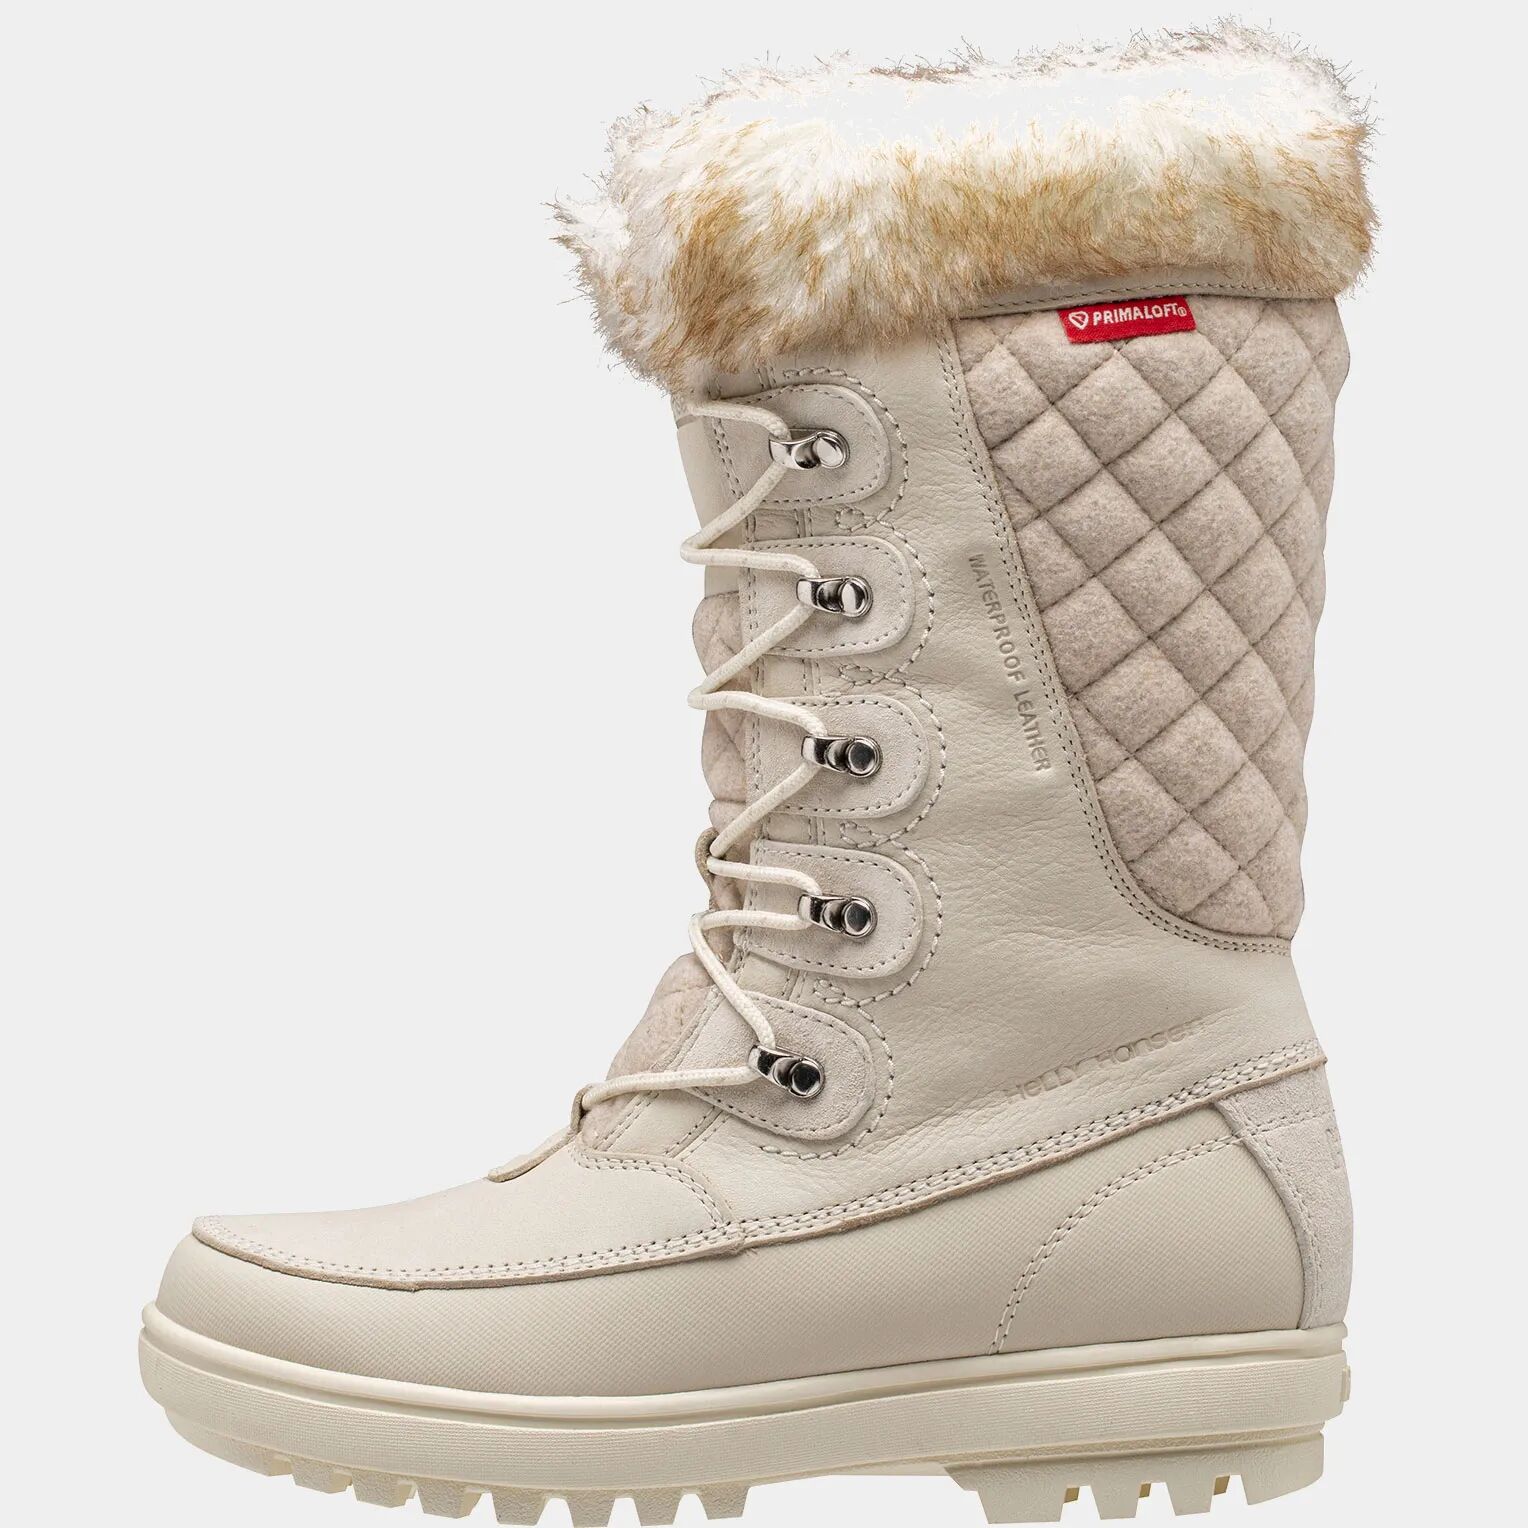 Helly Hansen Women's Garibaldi VL Snow Boots Beige 4 - Cream Sno Beige - Female